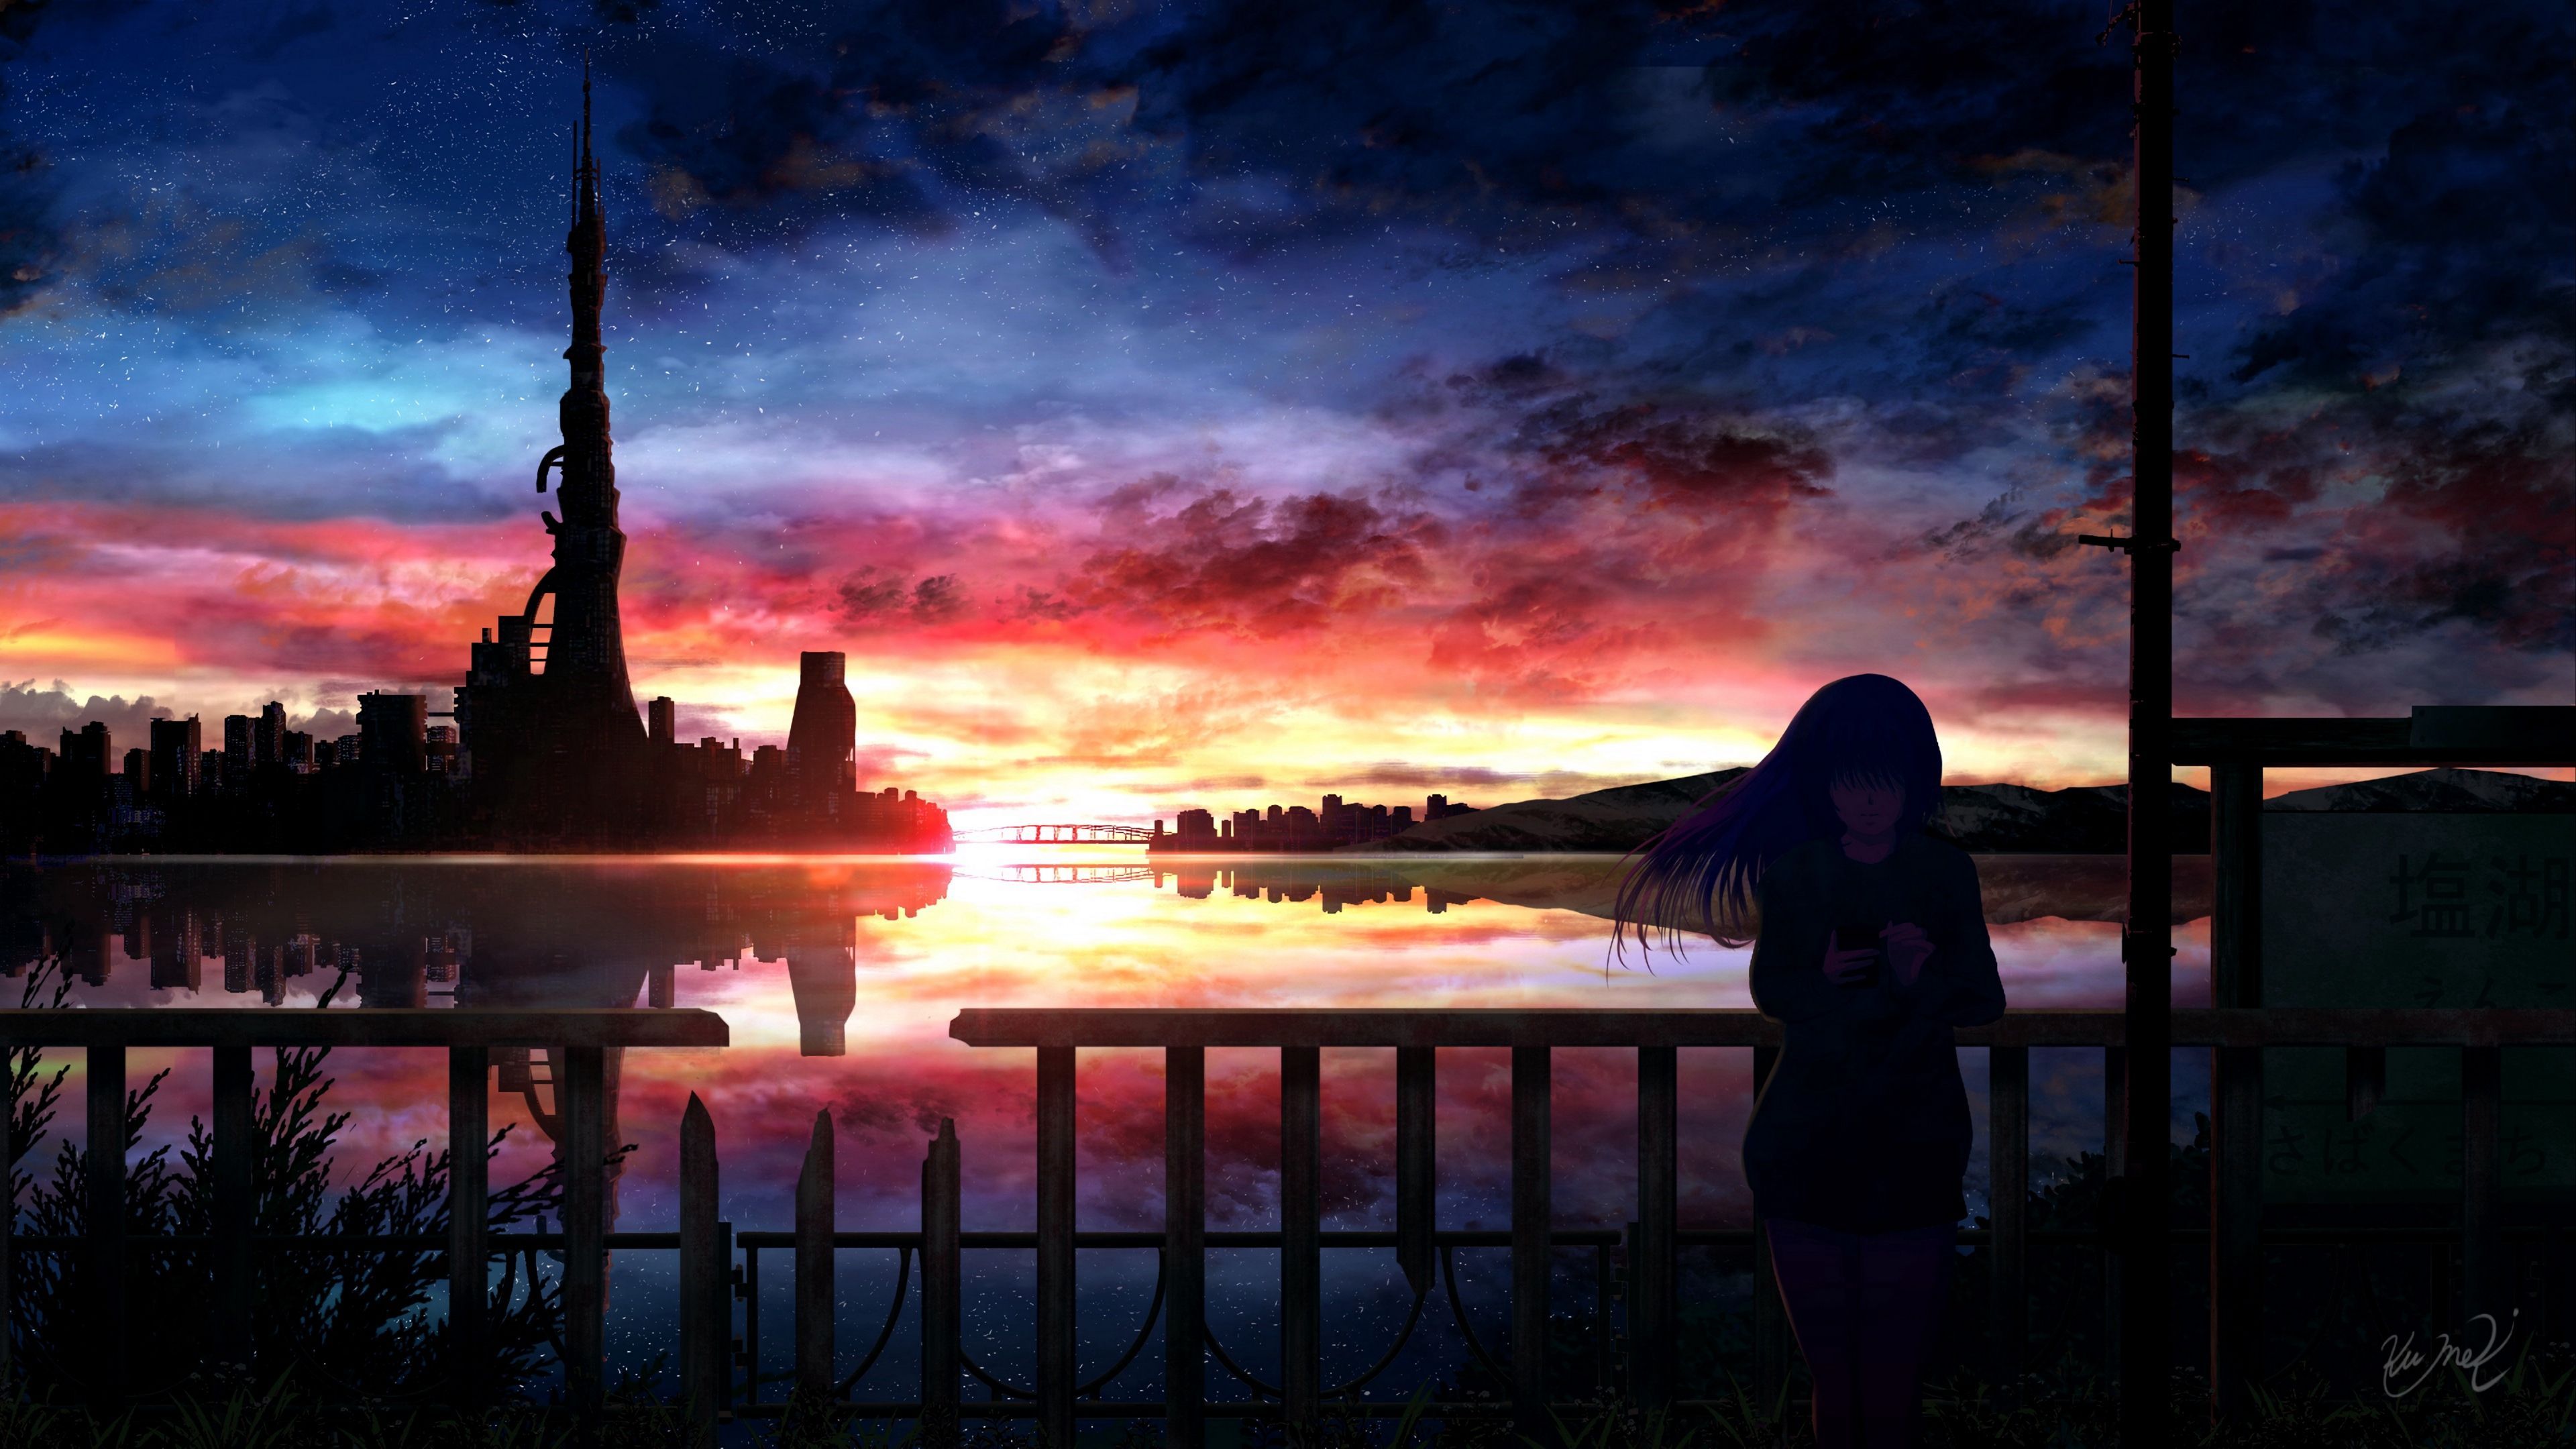 Silhouette Night 4K wallpaper. Night sky wallpaper, Anime background wallpaper, HD anime wallpaper